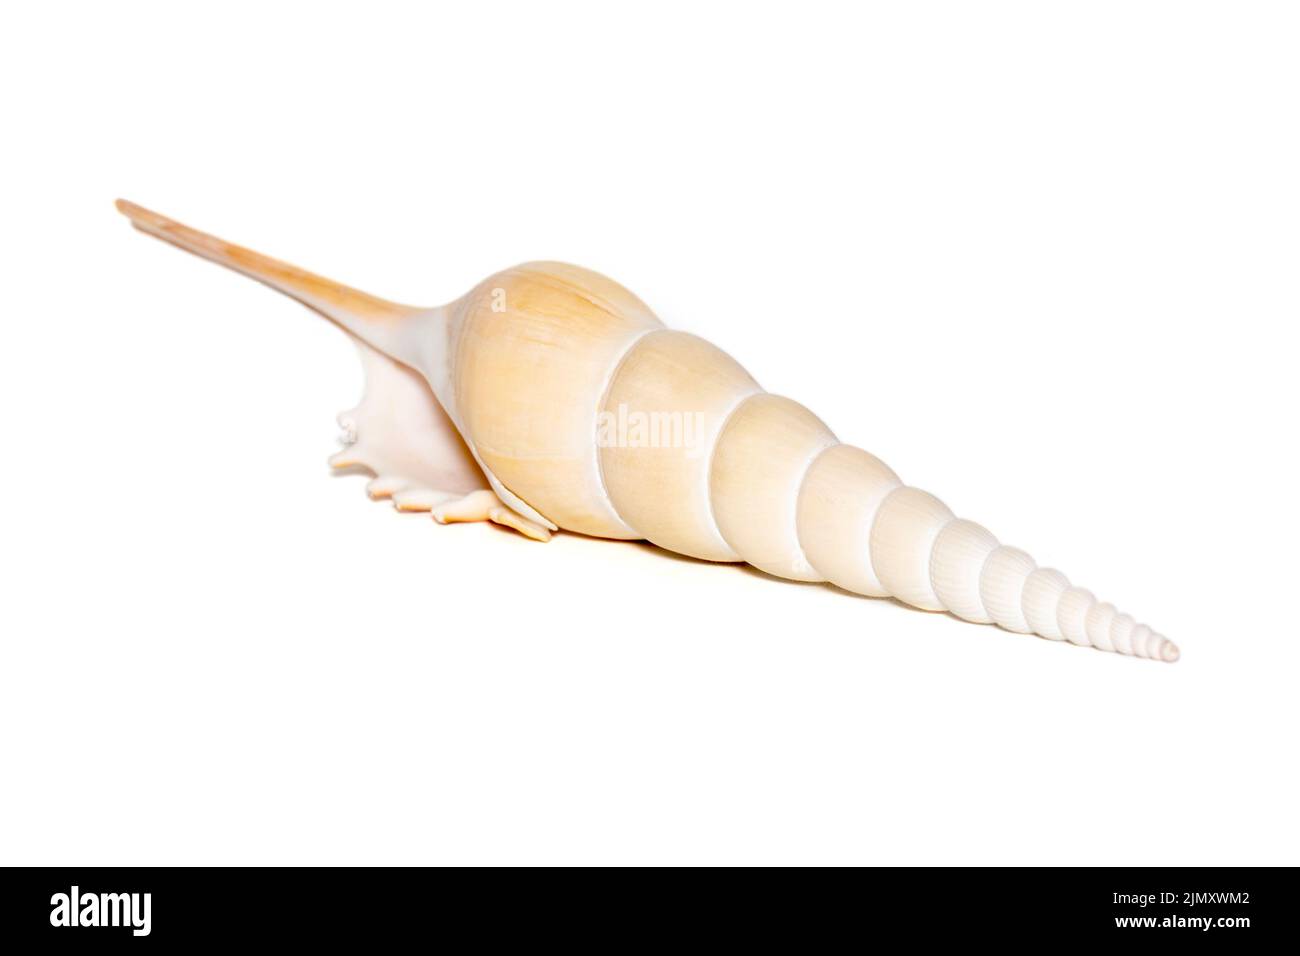 Immagine delle conchiglie di Tibia Fusus (tibia fuso o gasteropode di tibia shinbone) su sfondo bianco. Conchiglie marine. Animali sottomarini. Foto Stock